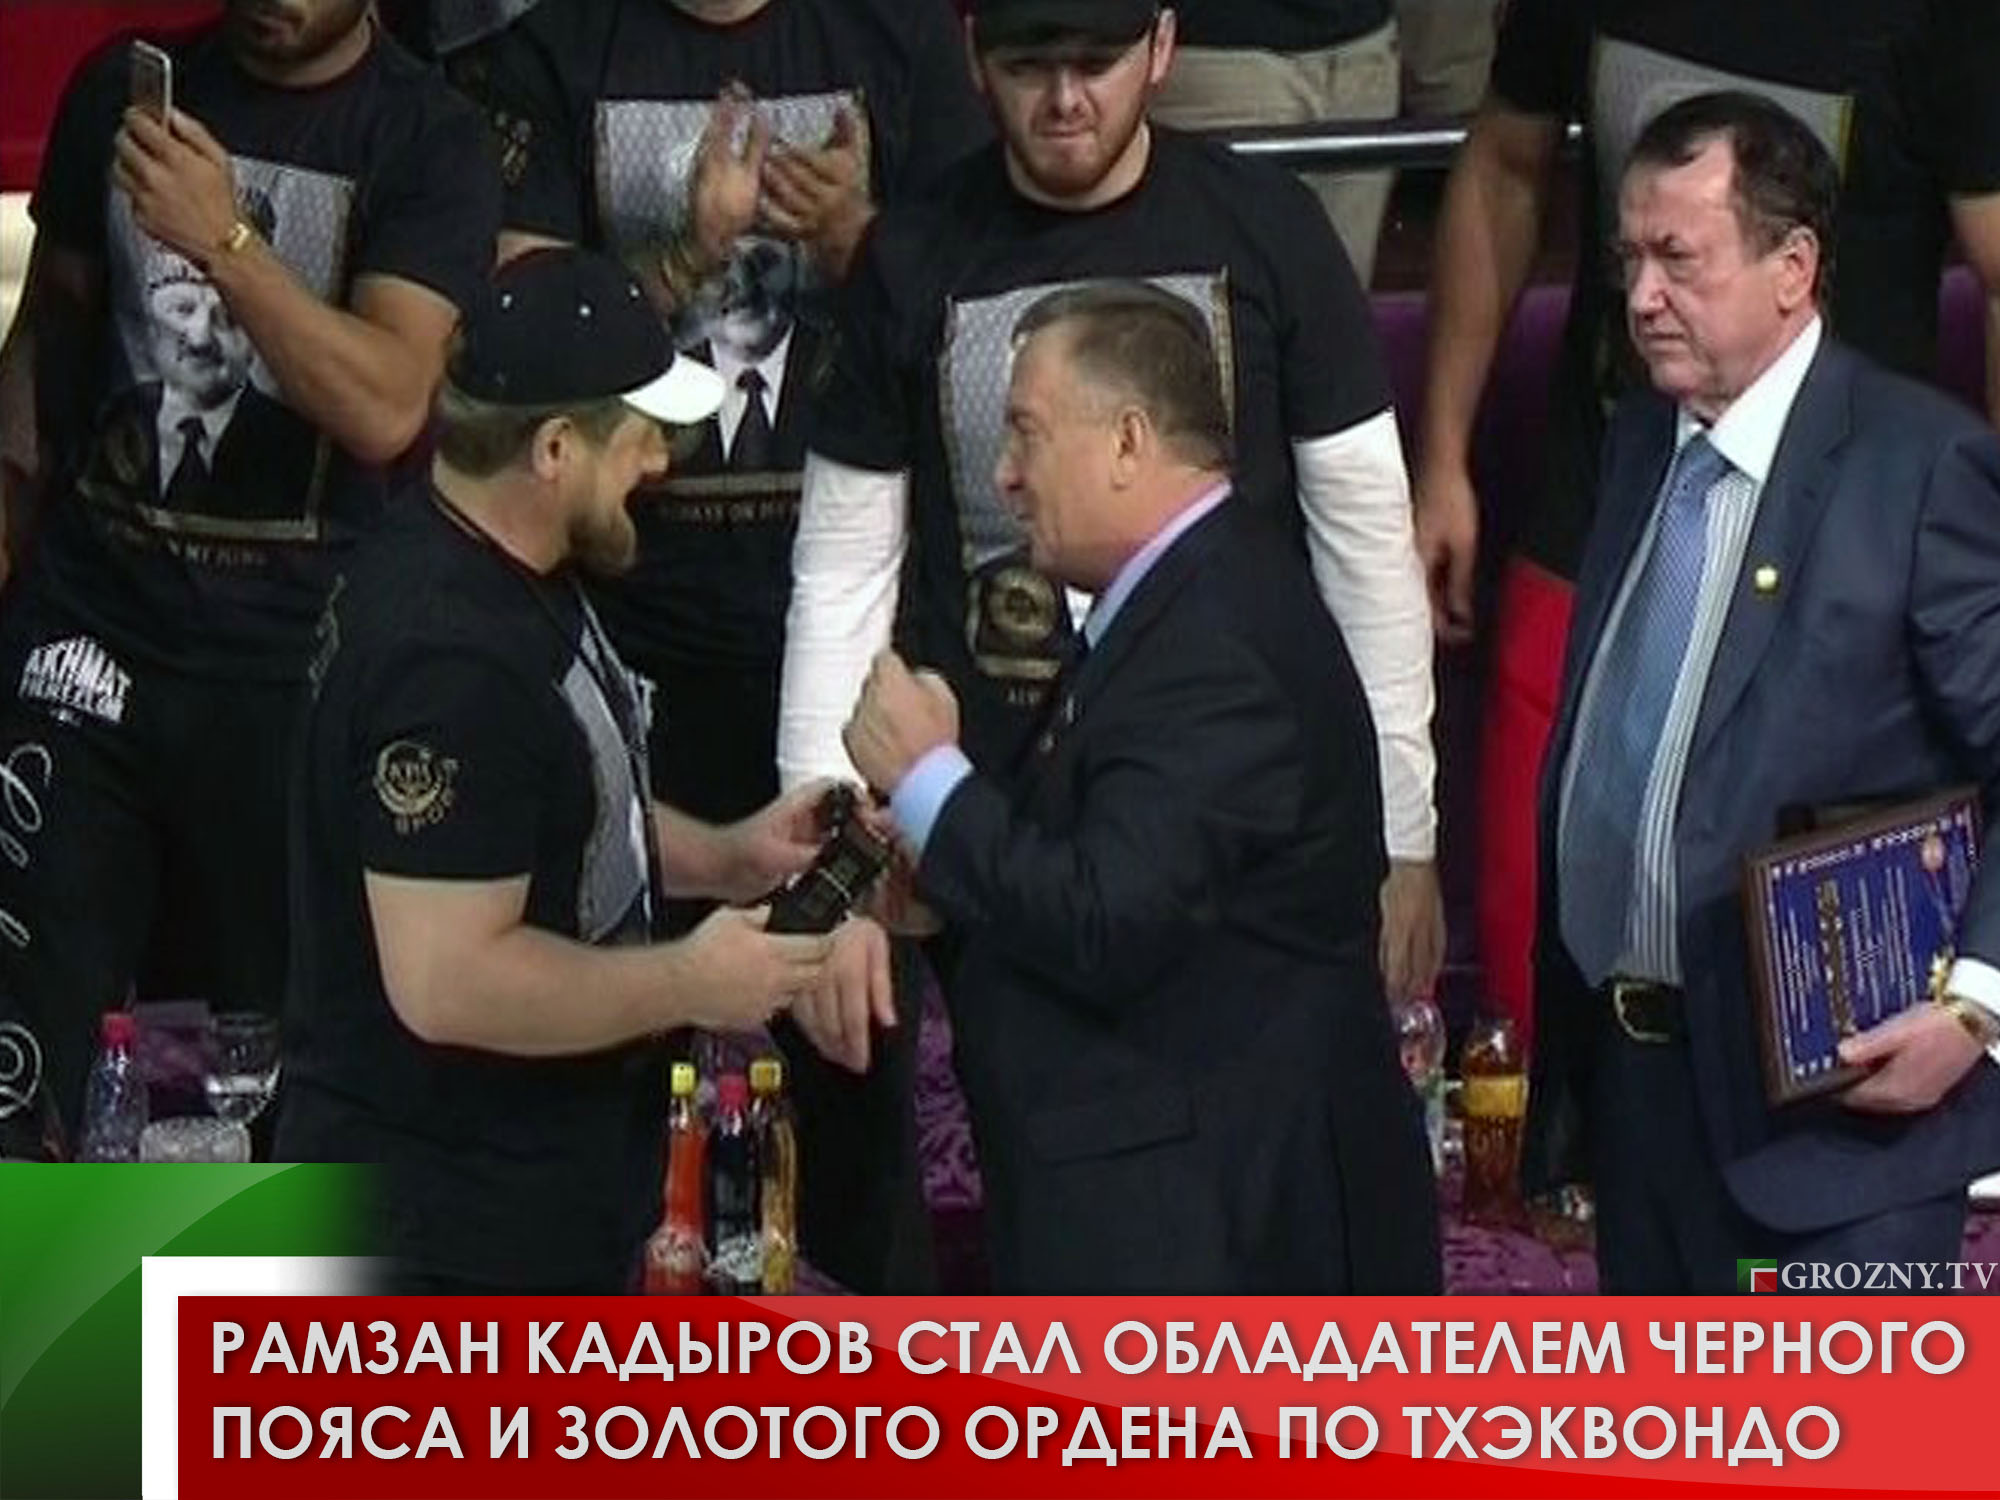 Рамзан Кадыров стал обладателем черного пояса и золотого ордена по тхэквондо